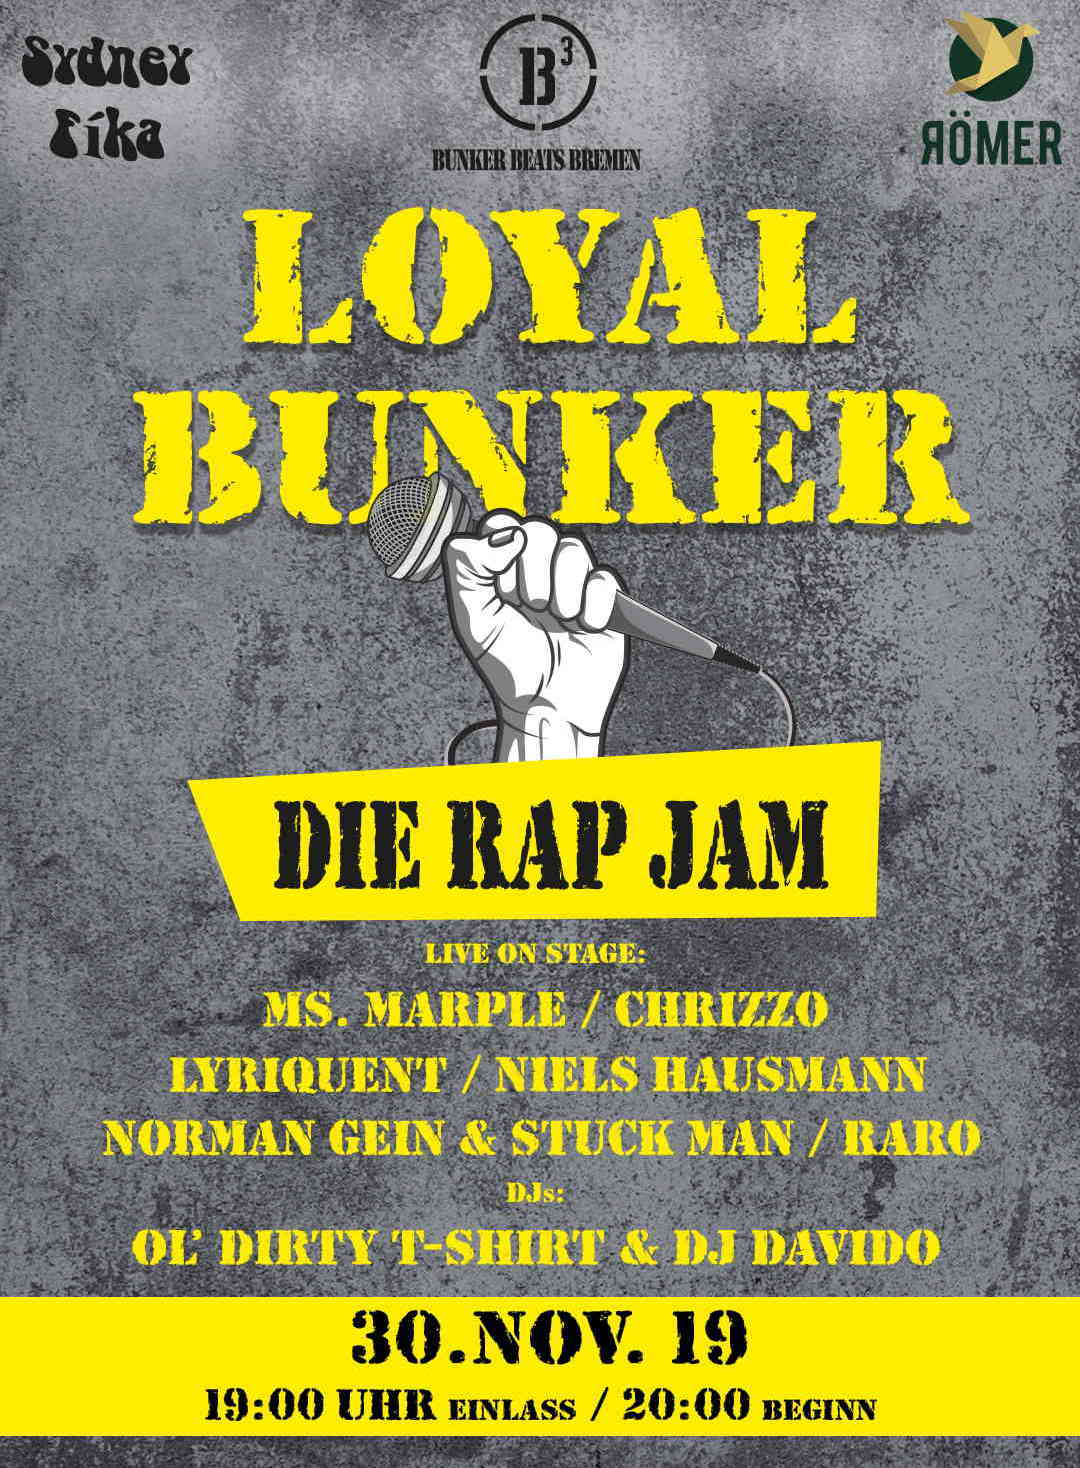 Loyal Bunker – Die Rap Jam